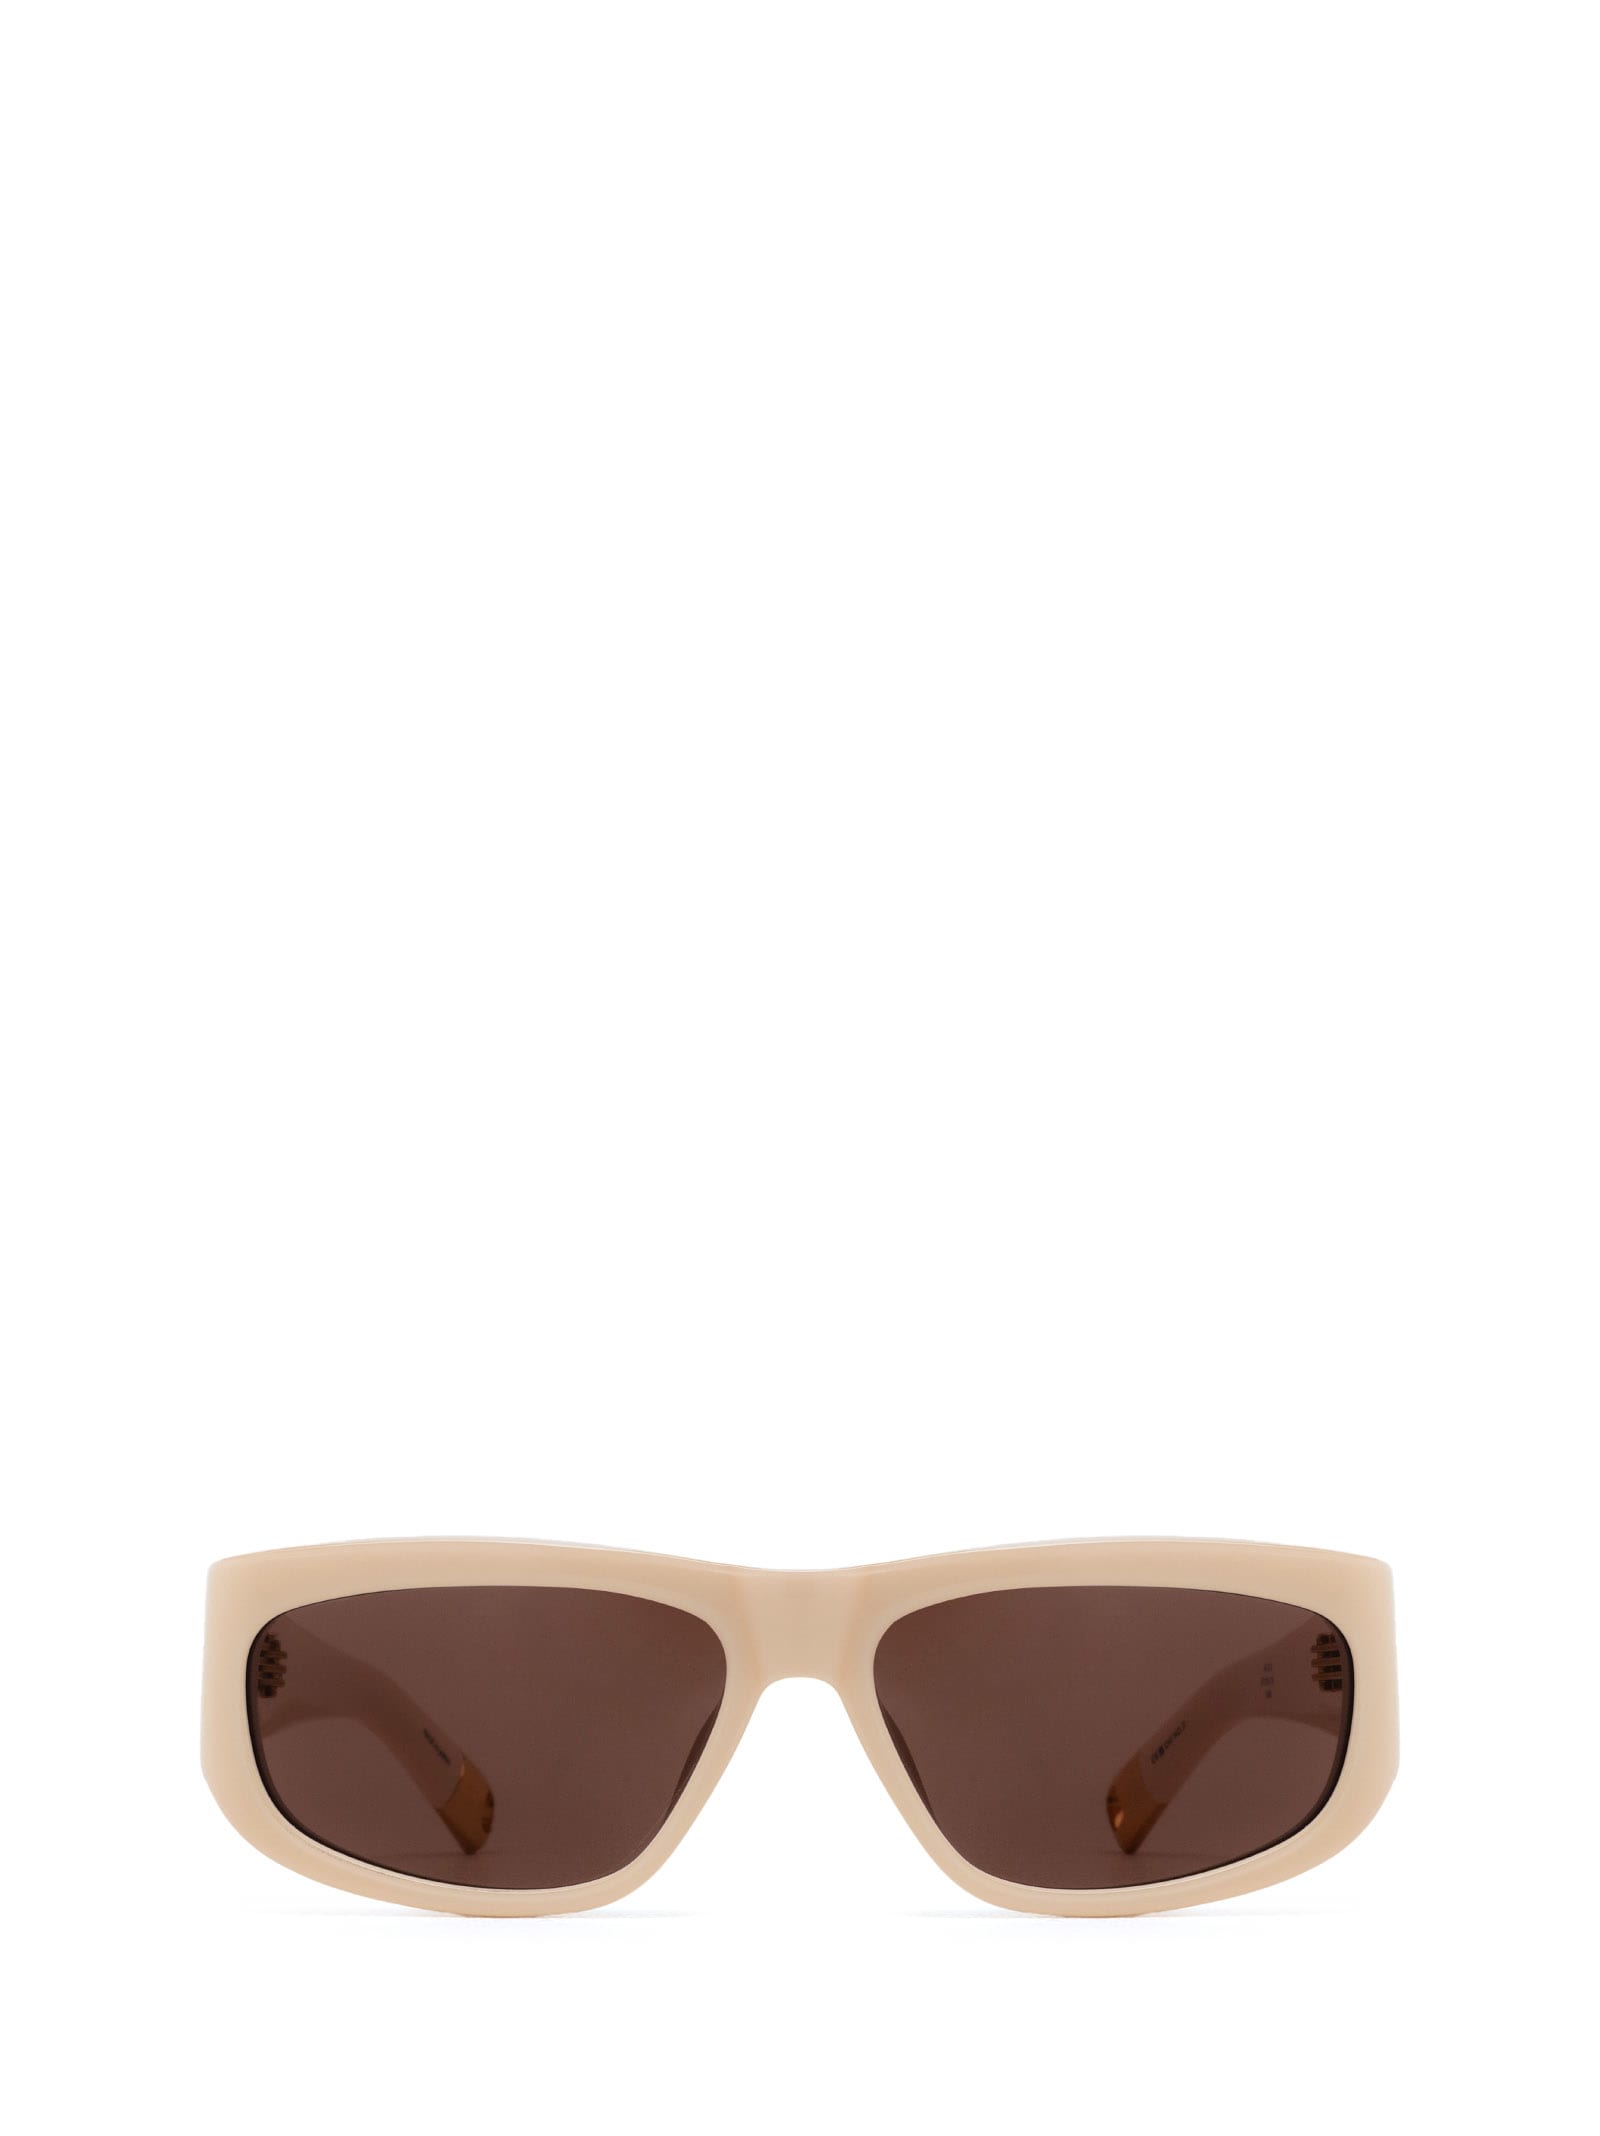 Jac2 Cream Sunglasses